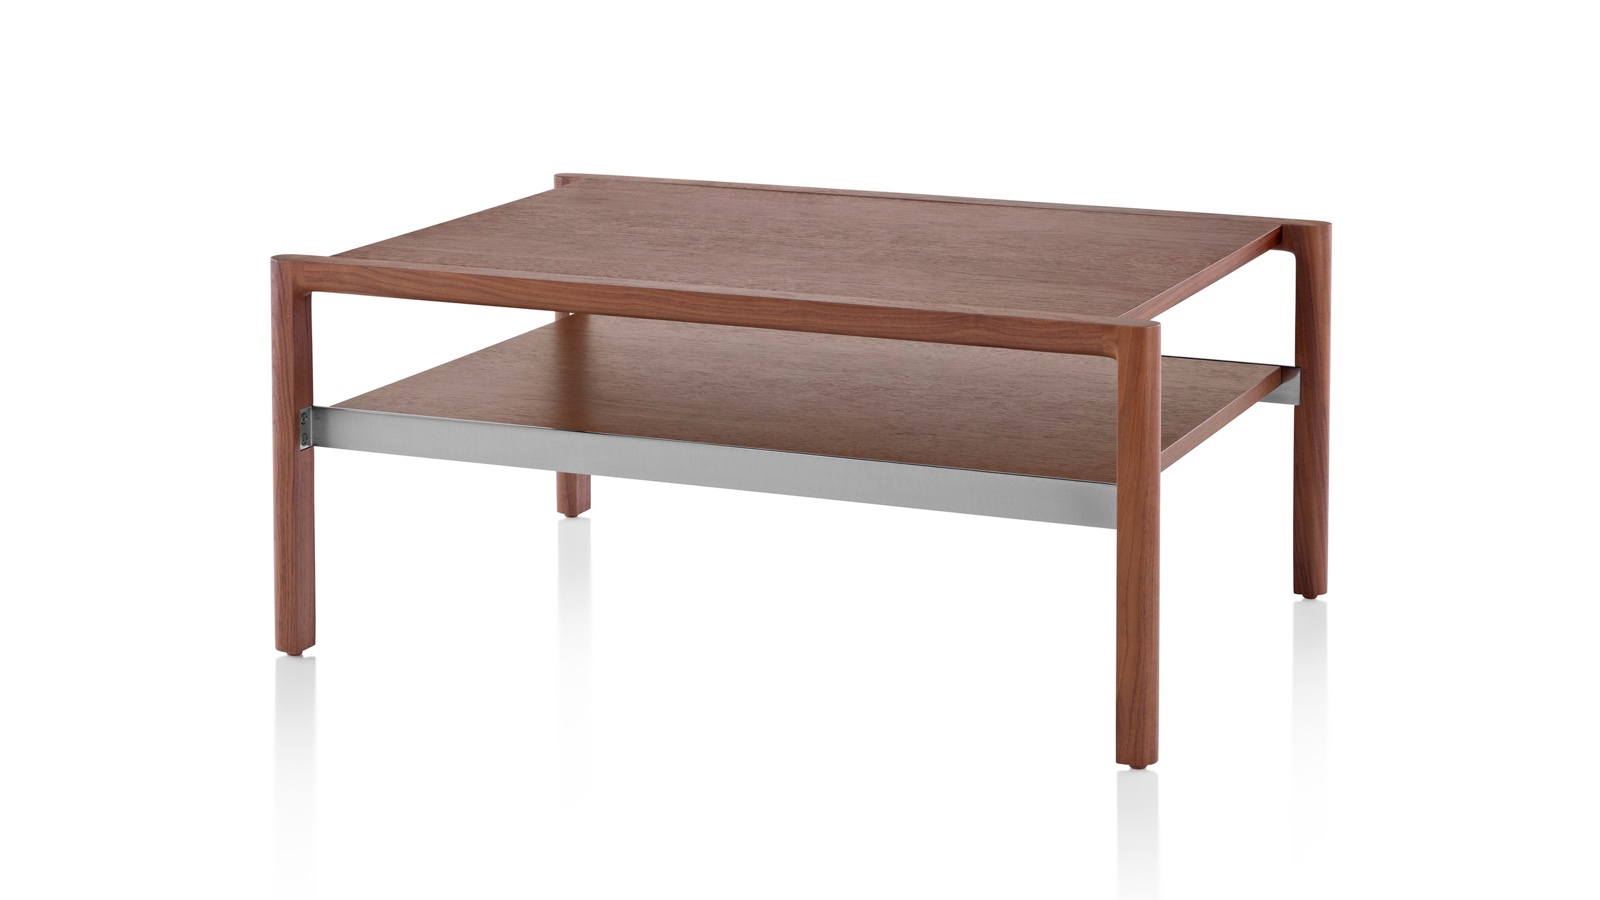 Uma visão angular de uma mesa retangular Brabo ocasional com dois níveis em um acabamento médio.